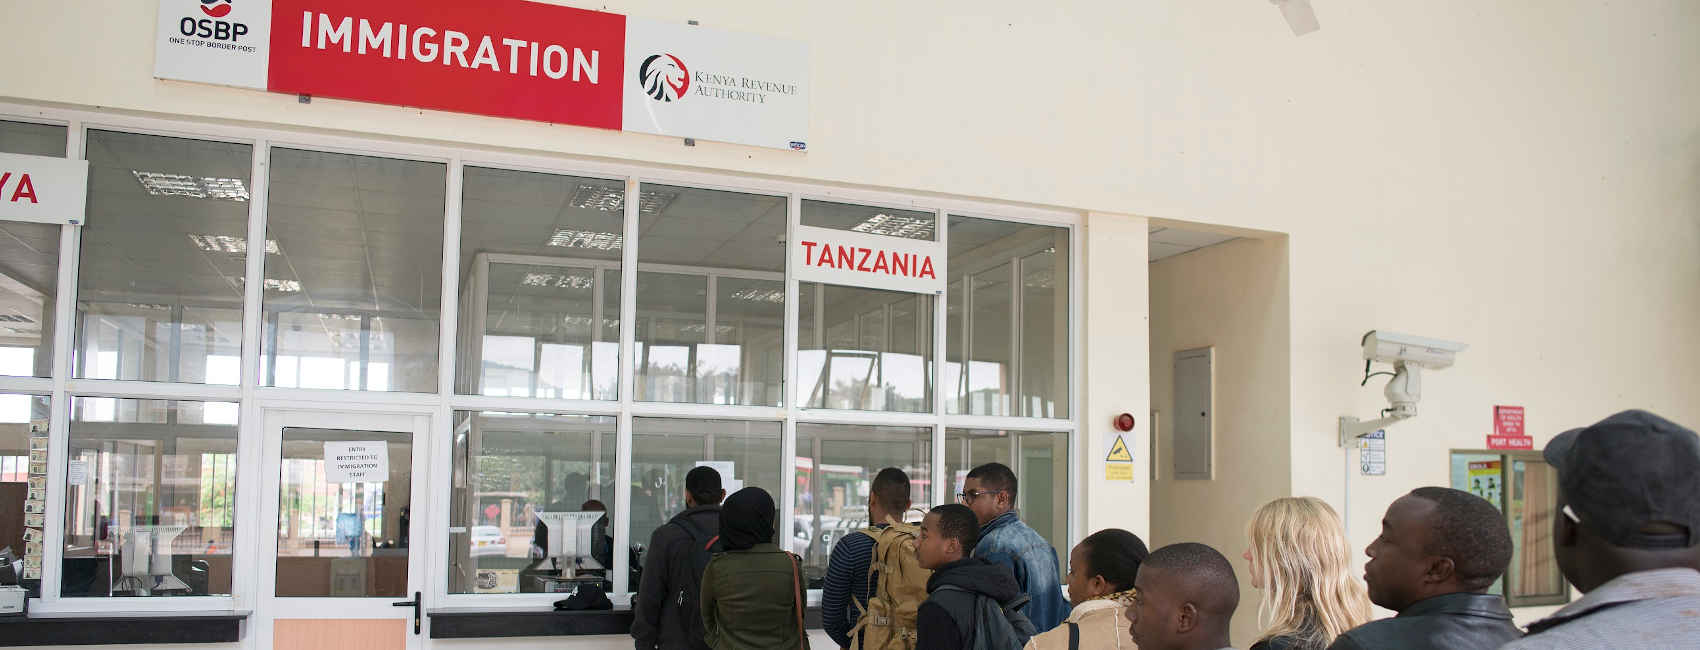 Kenya-Tanzania Border Crossing at Namanga 